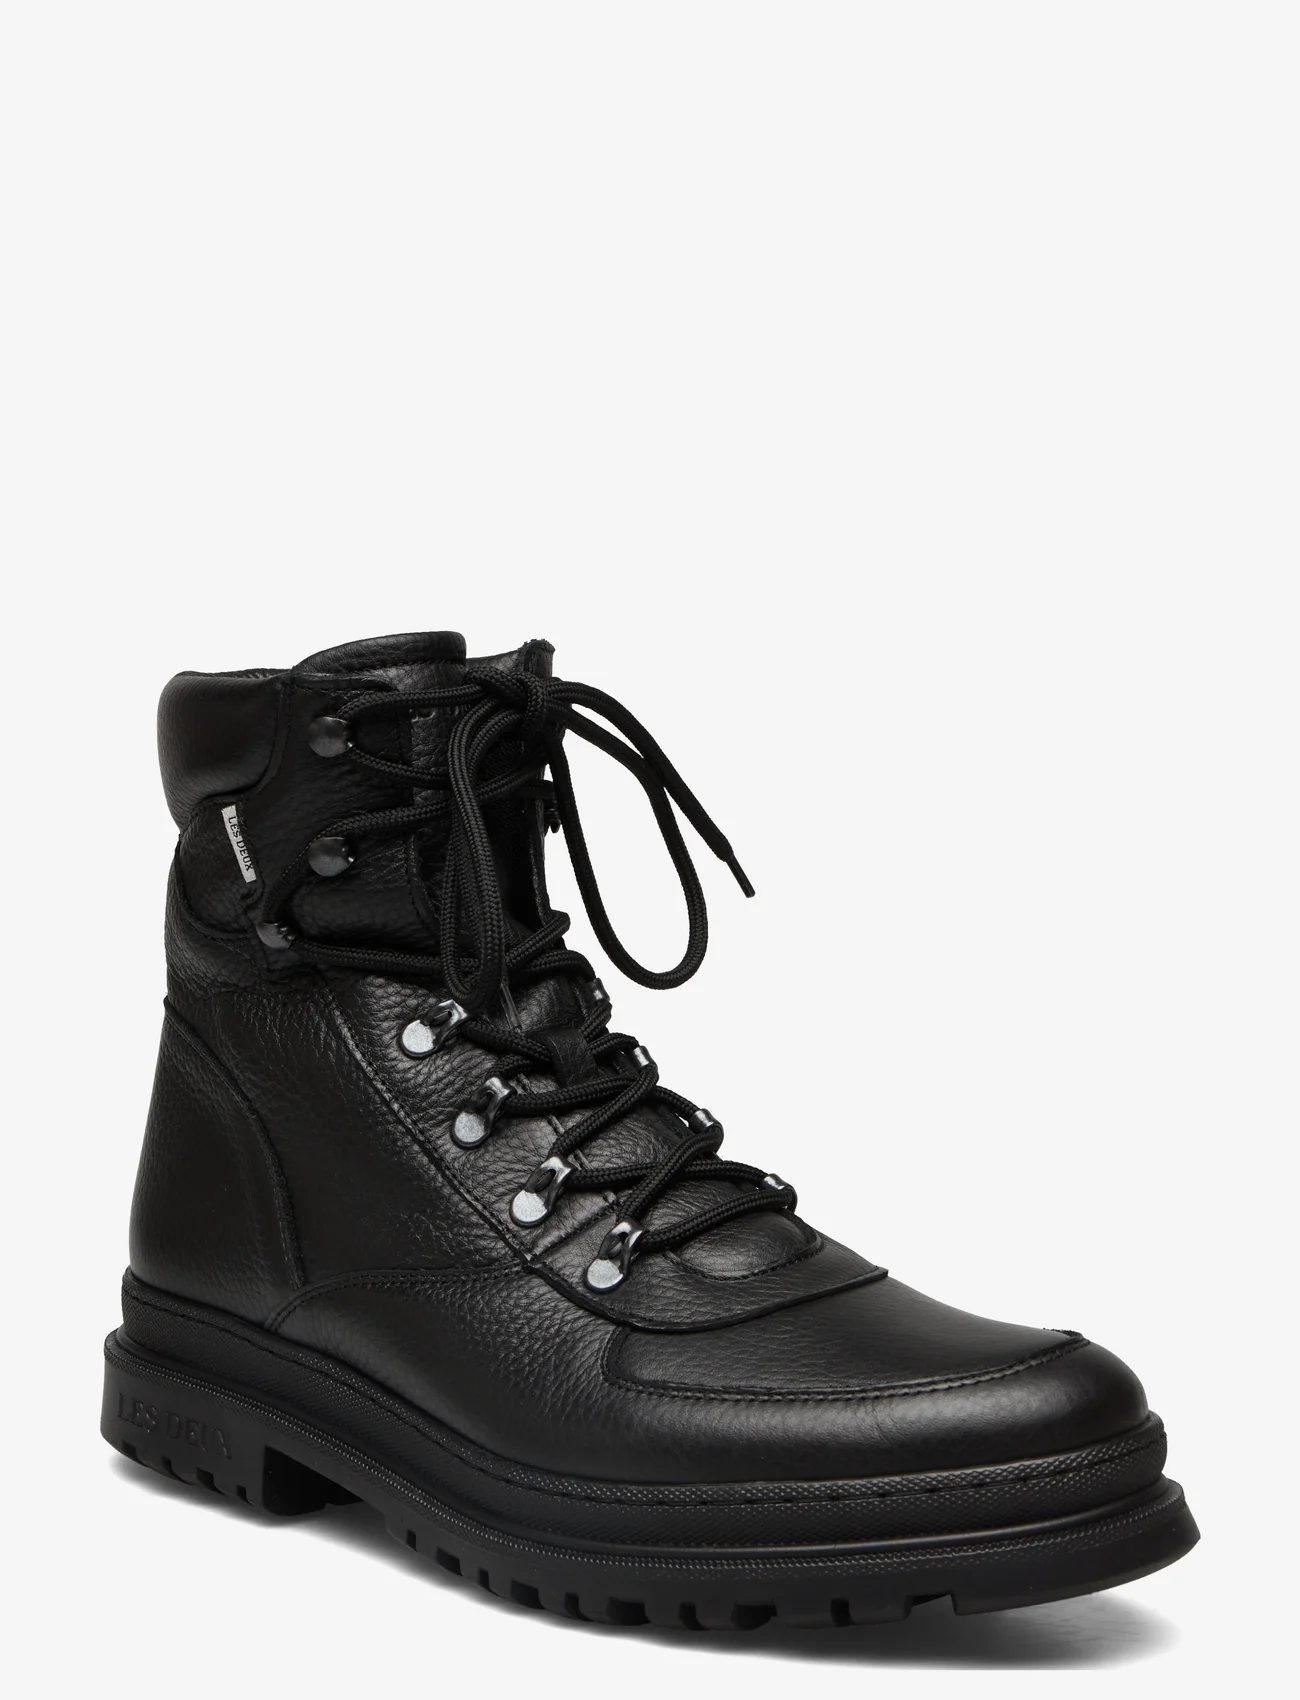 Les Deux - Tyler Leather Desert Boot - med snøring - black - 0